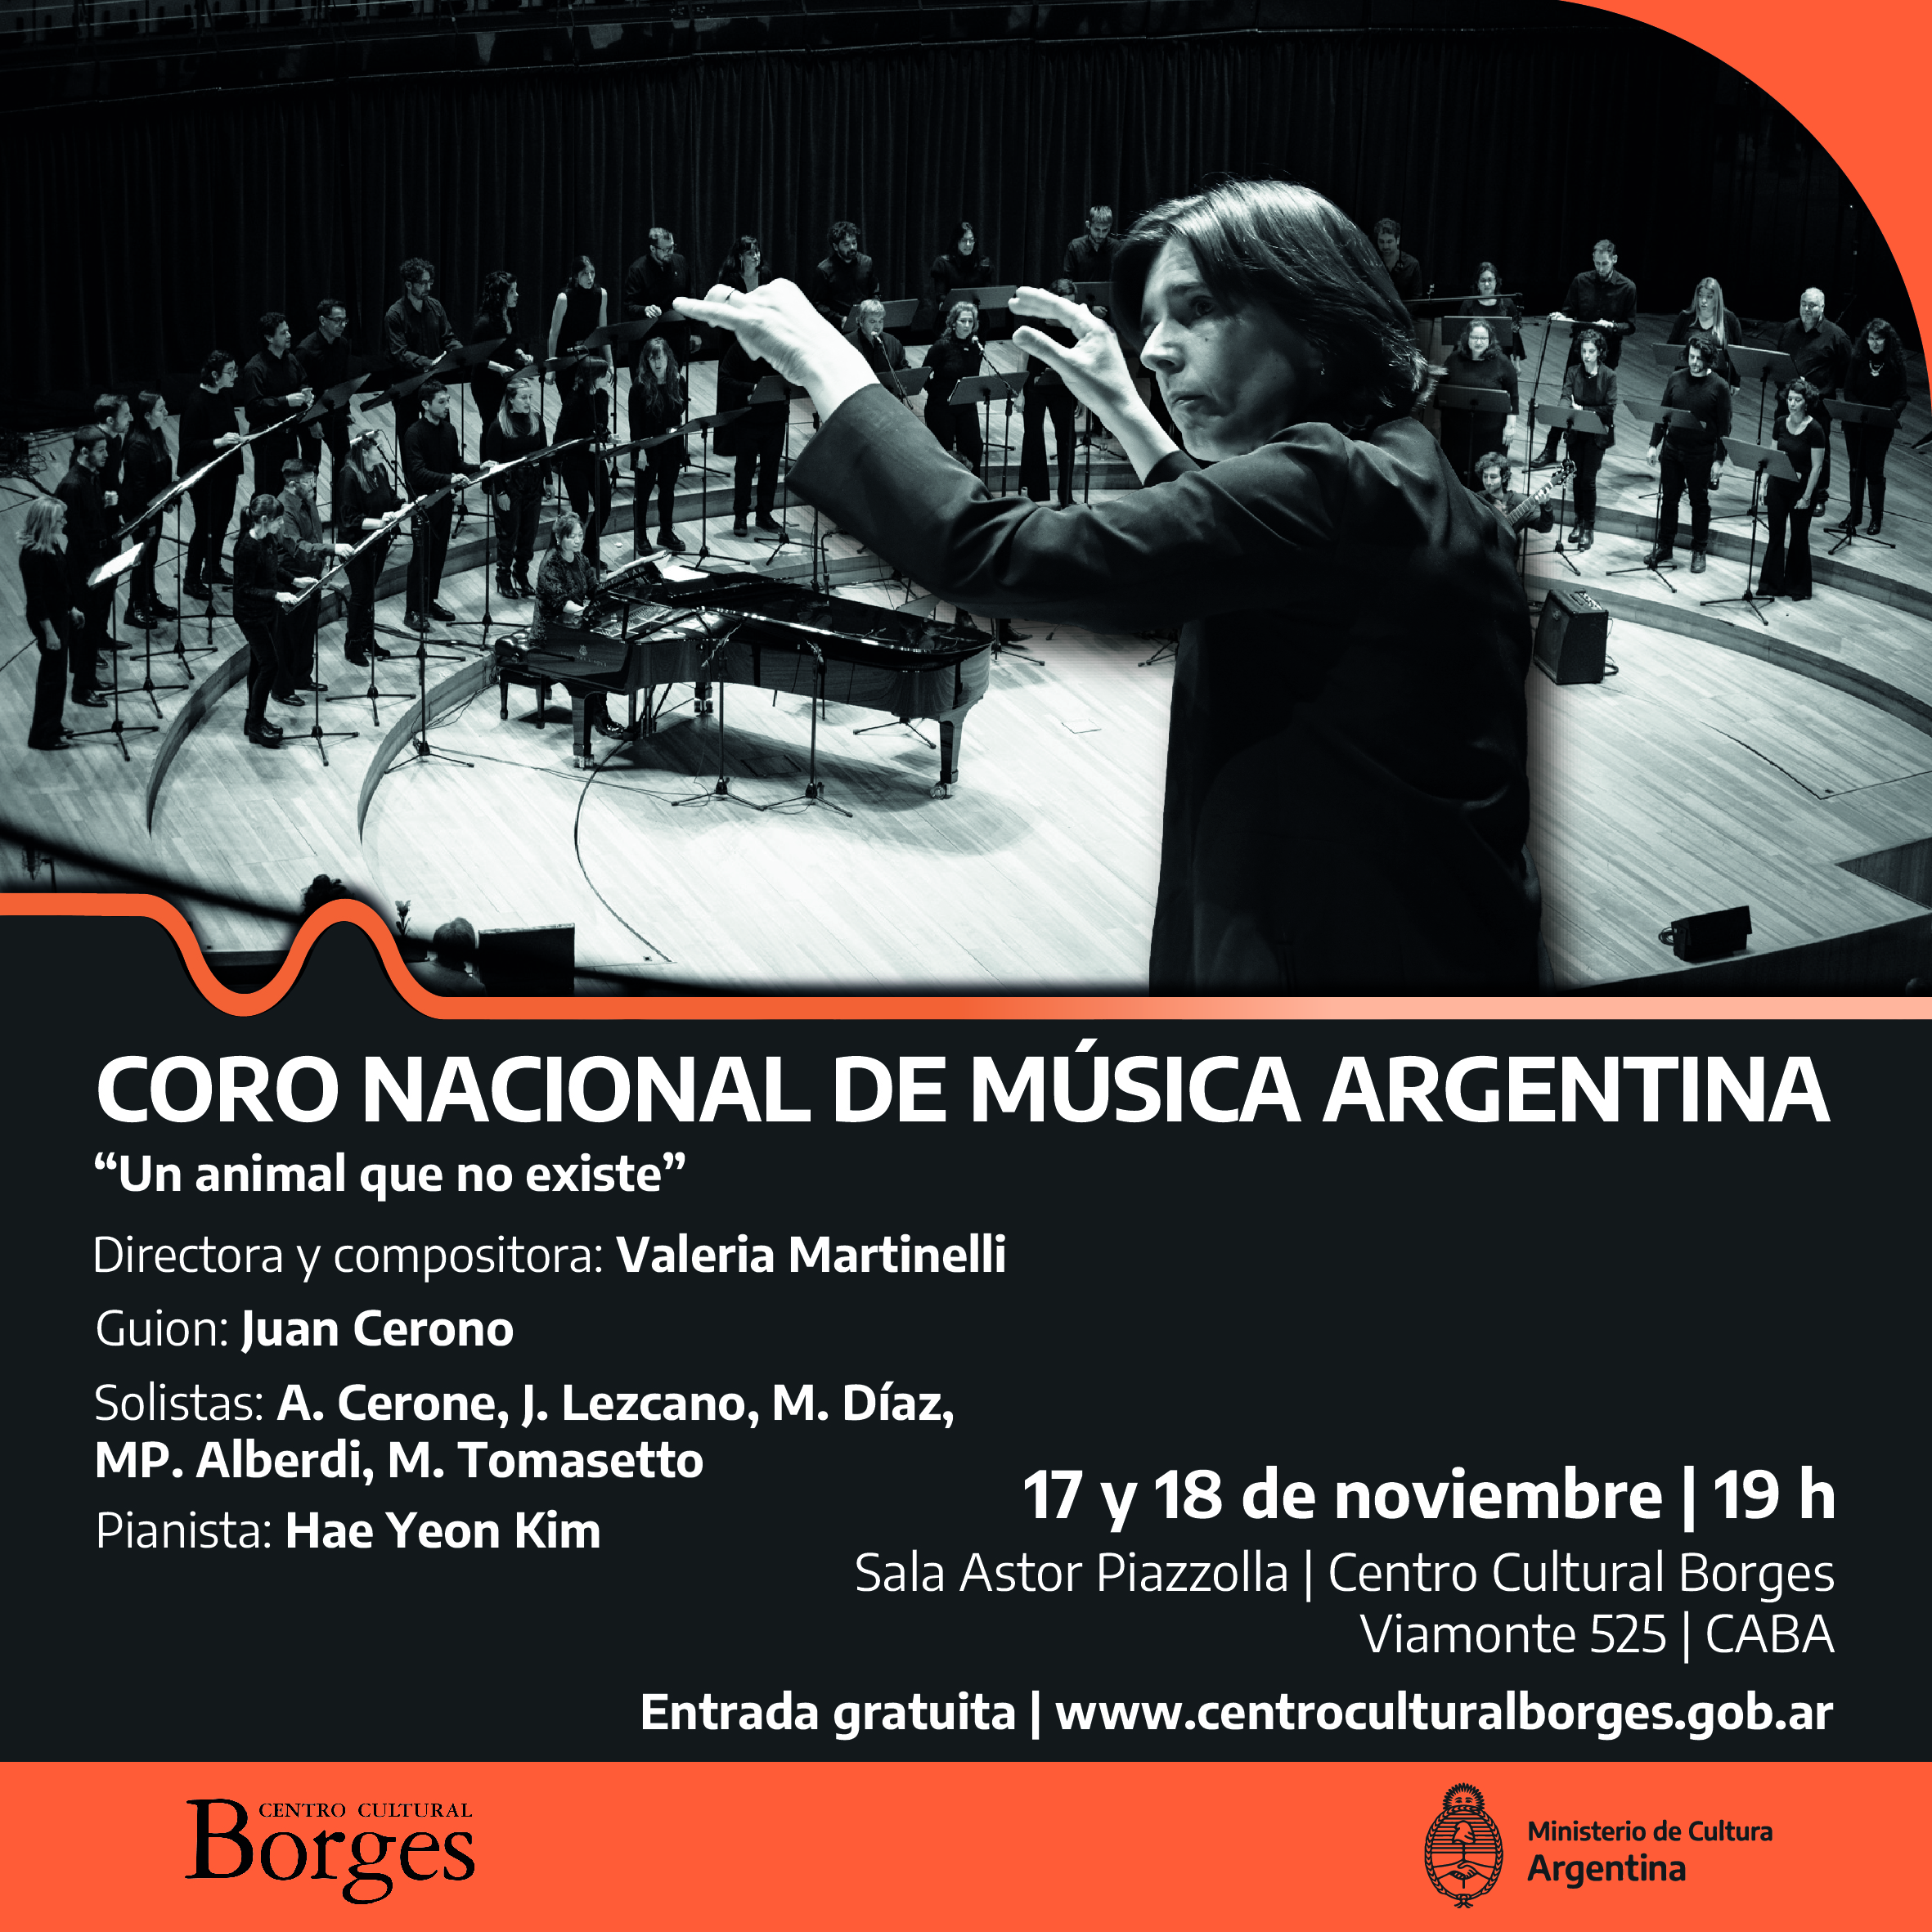 La obra “Un Animal que no existe” por el Coro Nacional de Música Argentina en el Centro Cultural Borges